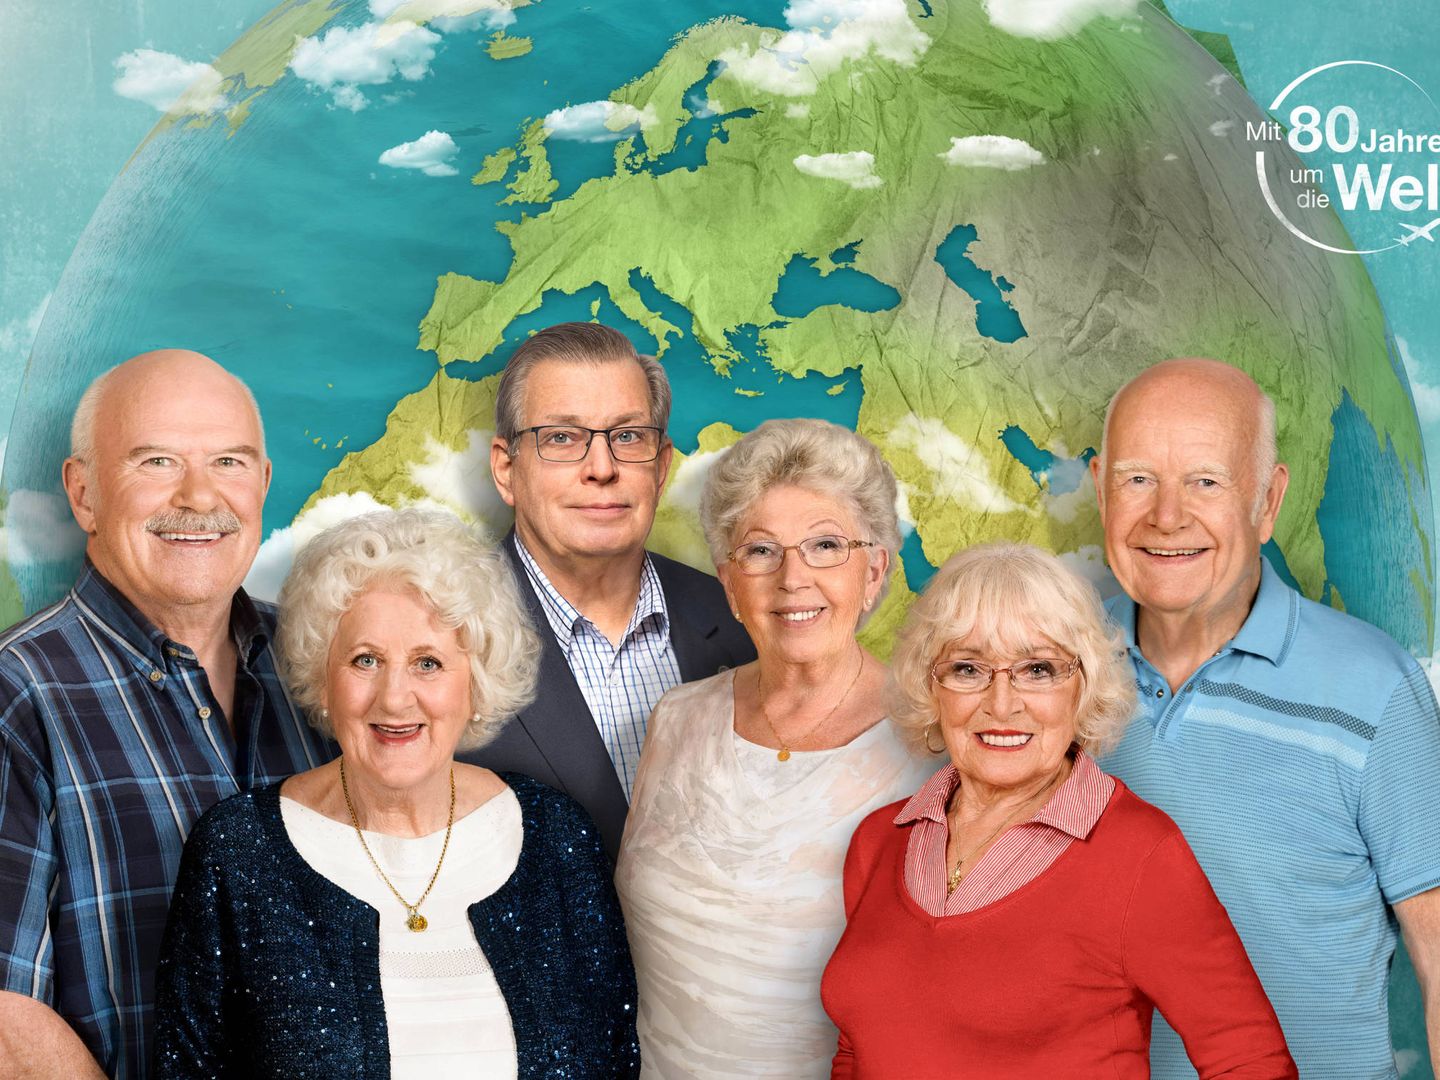 Bernd, Christina, Lothar, Marianne, Erika, Norbert, en 'Mit 80 Jahren um die Welt'. (ZDF)